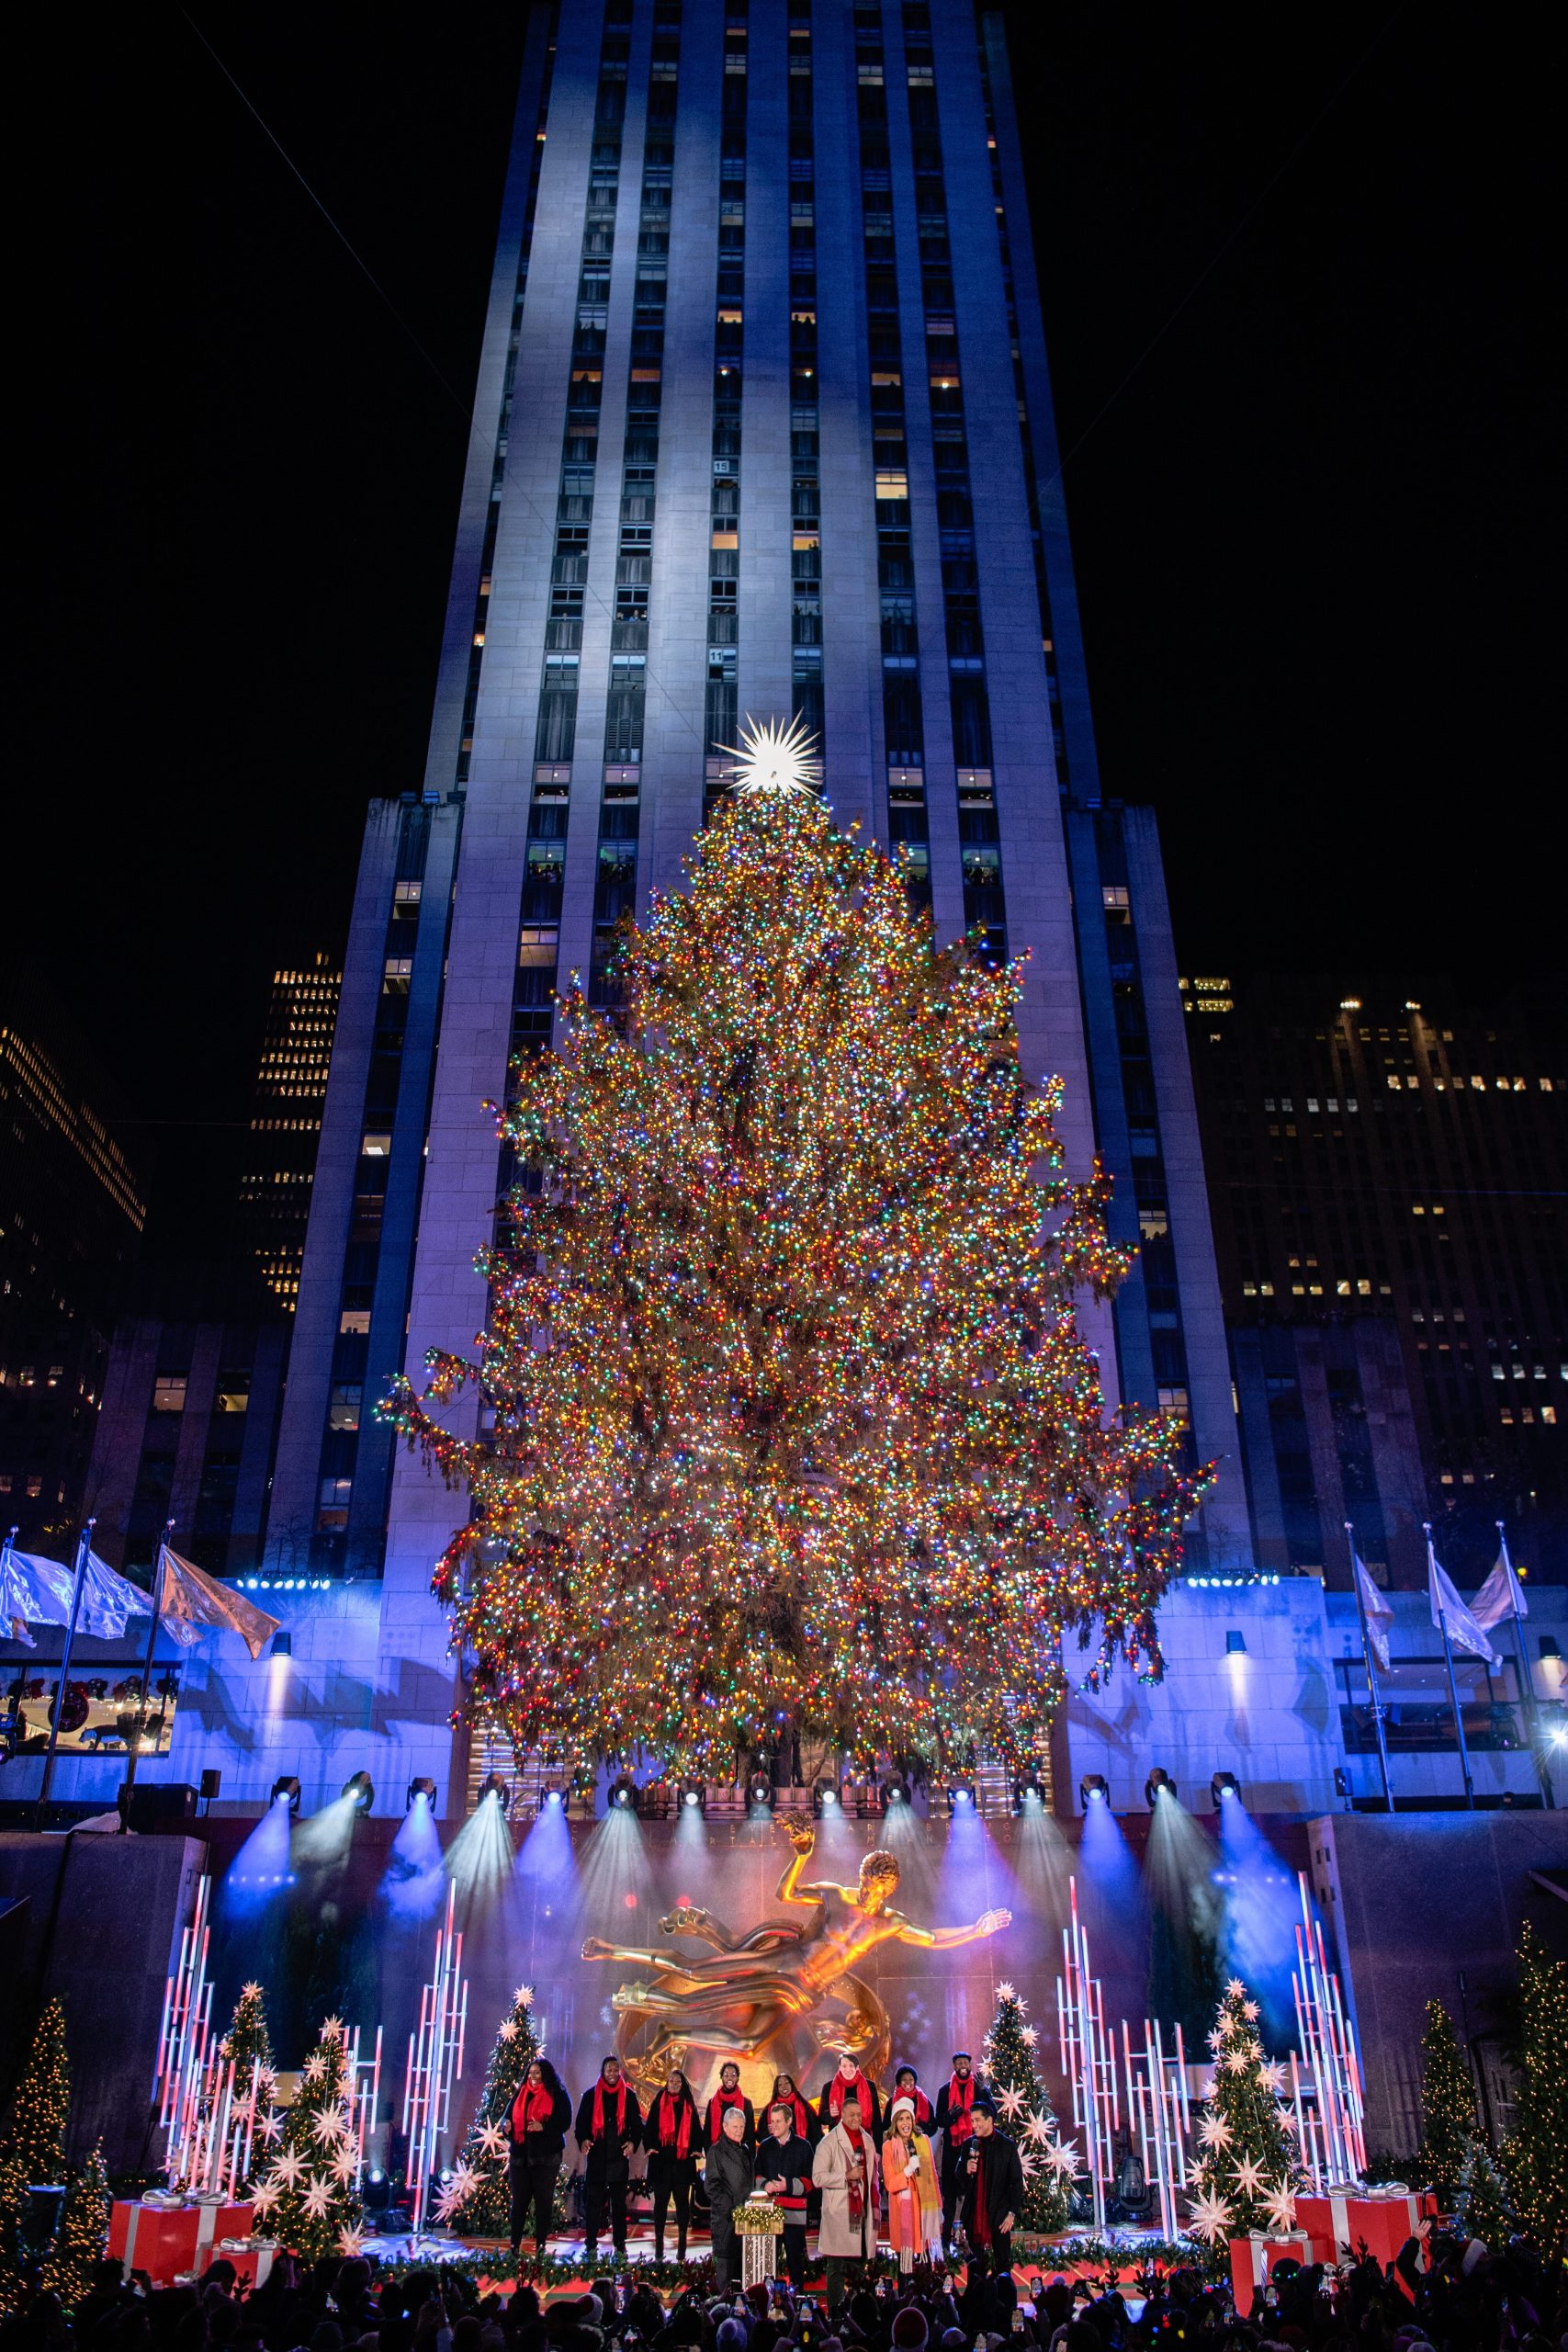 A estrela Swarovski ilumina o topo da árvore de Natal no Rockefeller Center  em Nova York – : : CidadeMarketing : :